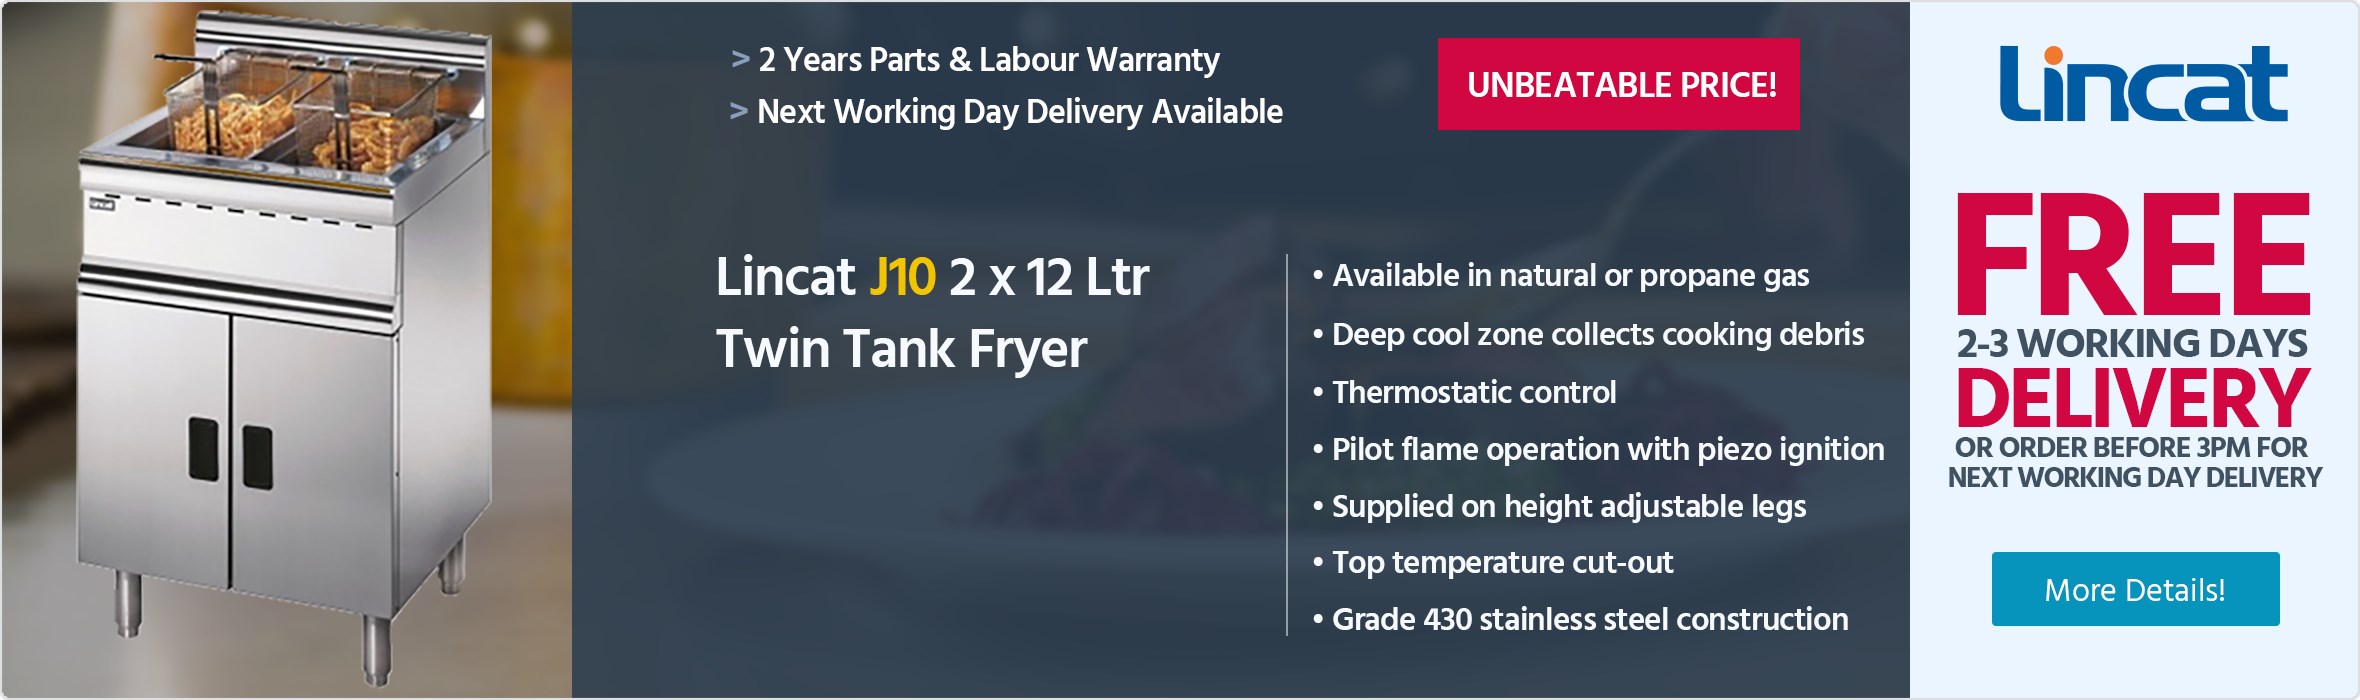 Lincat J10 2 x 12 Ltr Gas Twin Tank Fryer With 2 Baskets